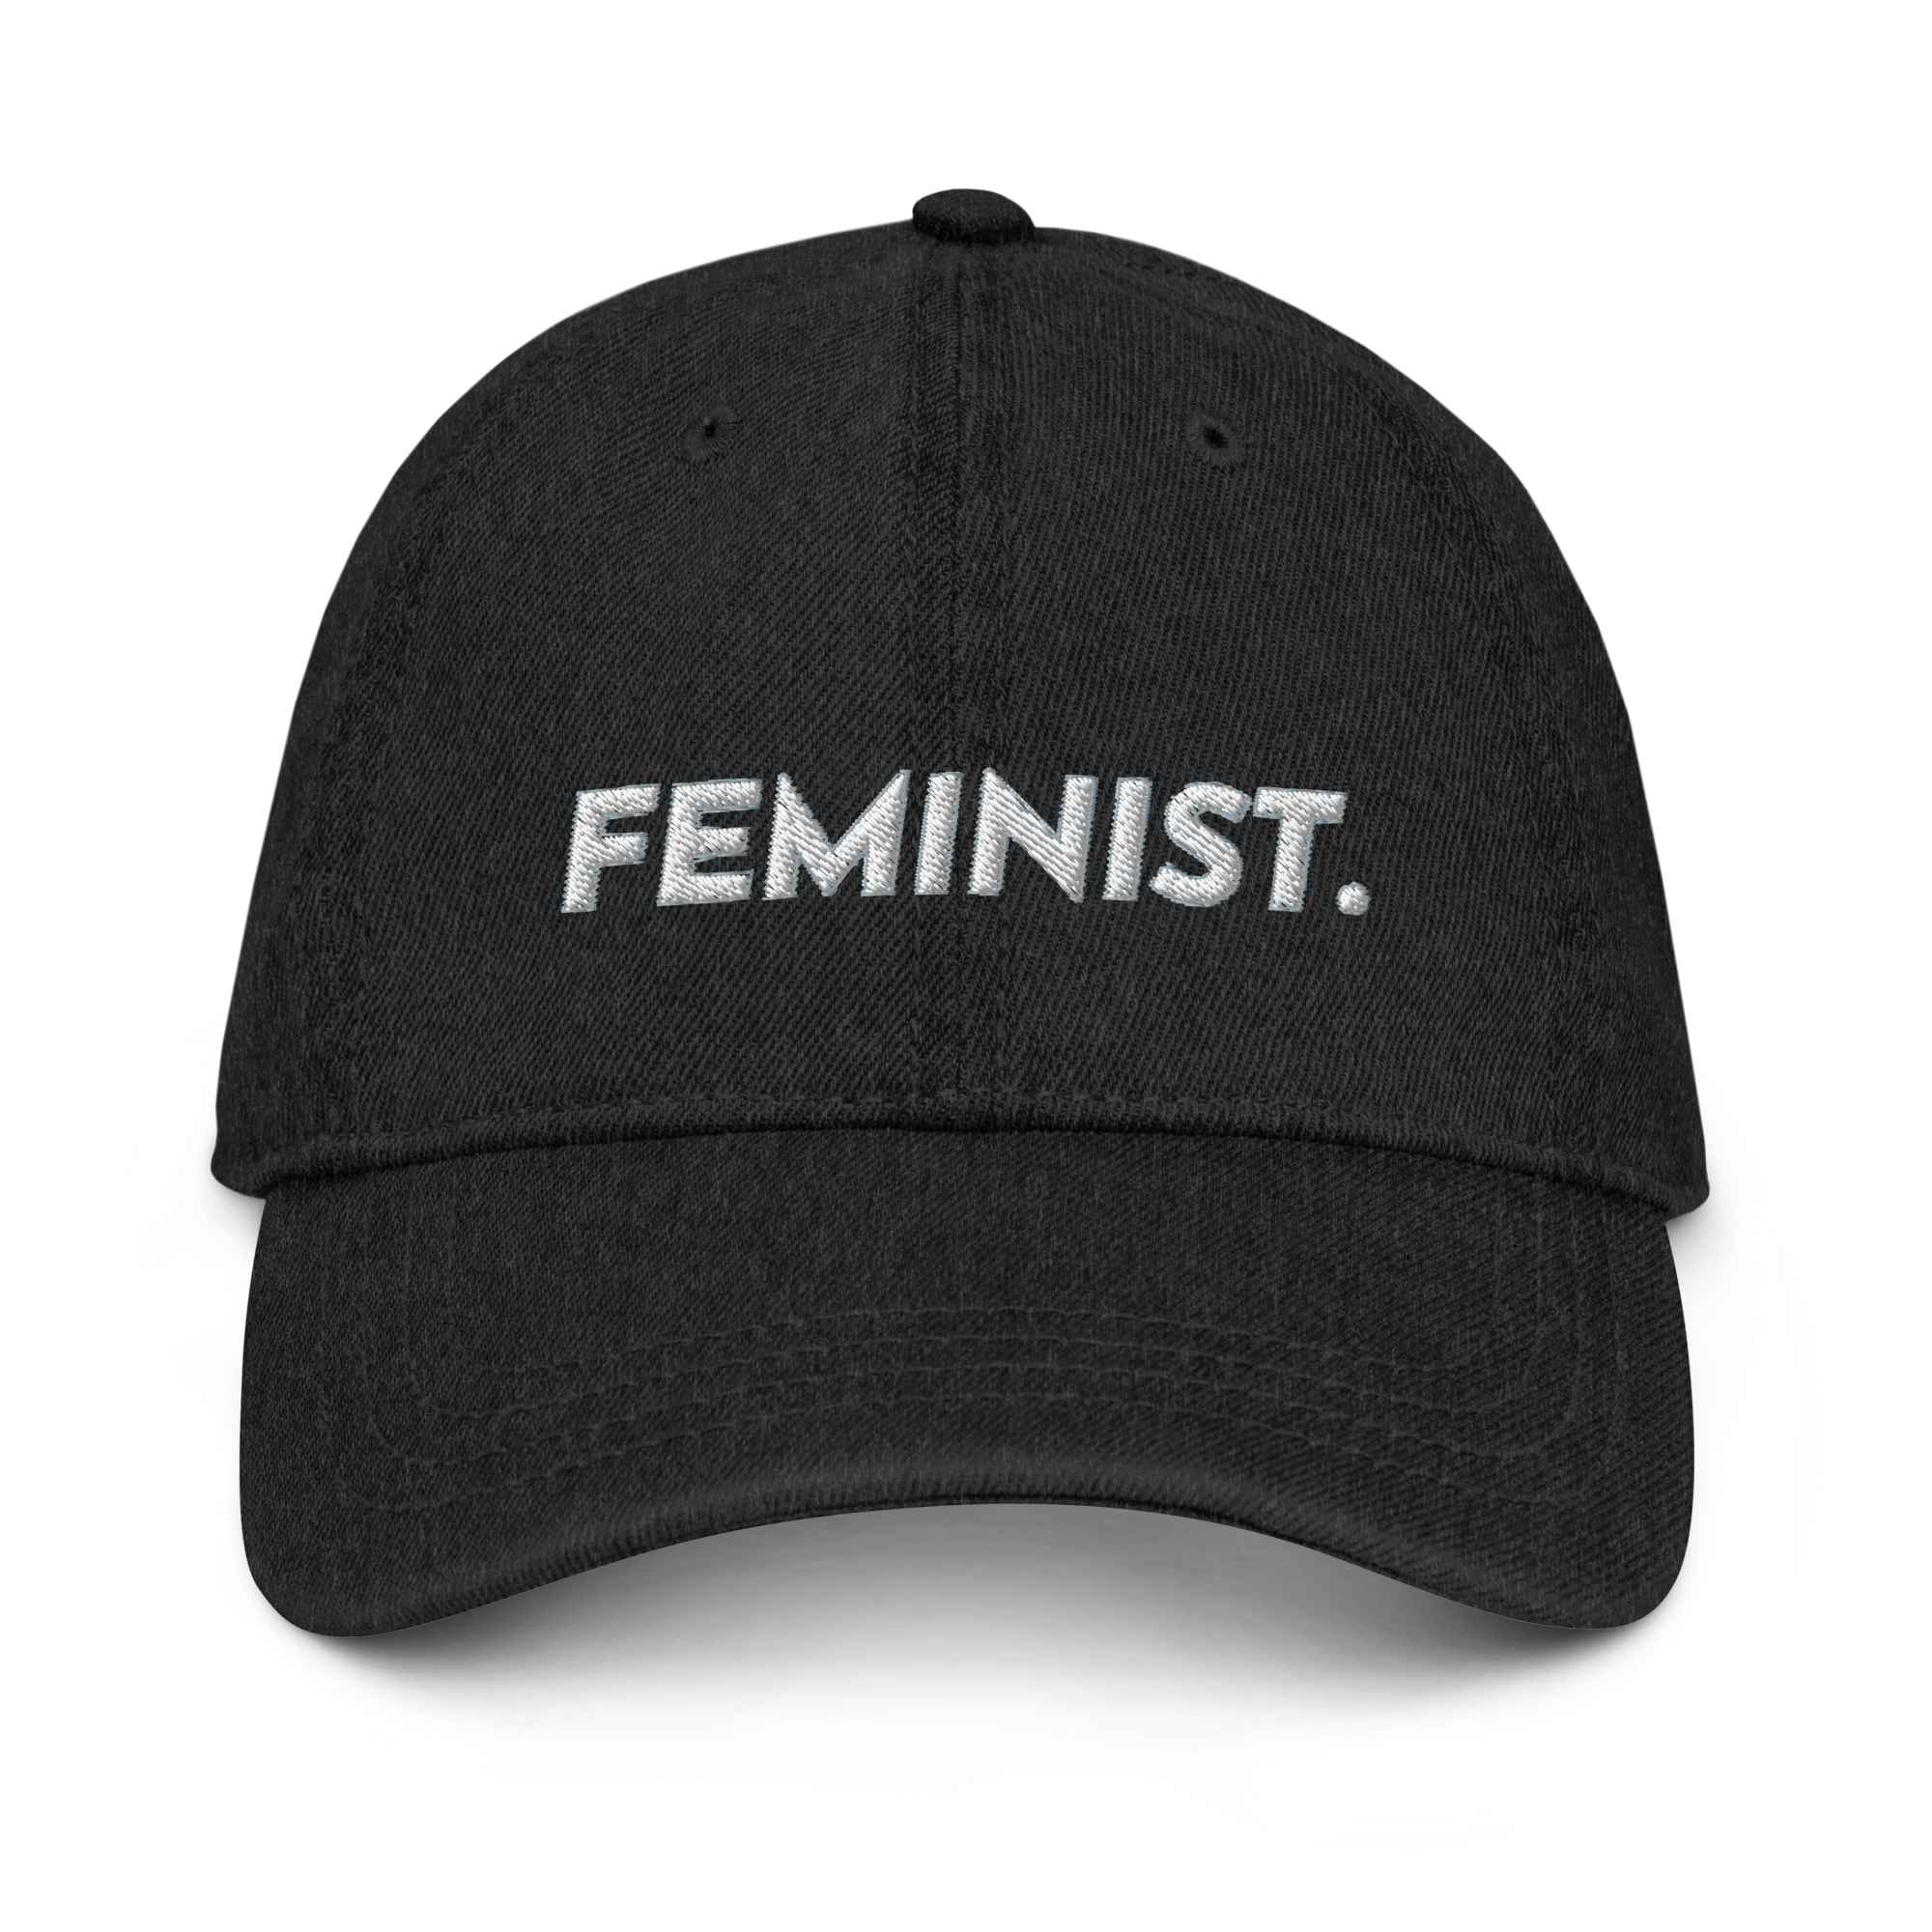 Feminist Embroidered Denim Baseball Cap - Black